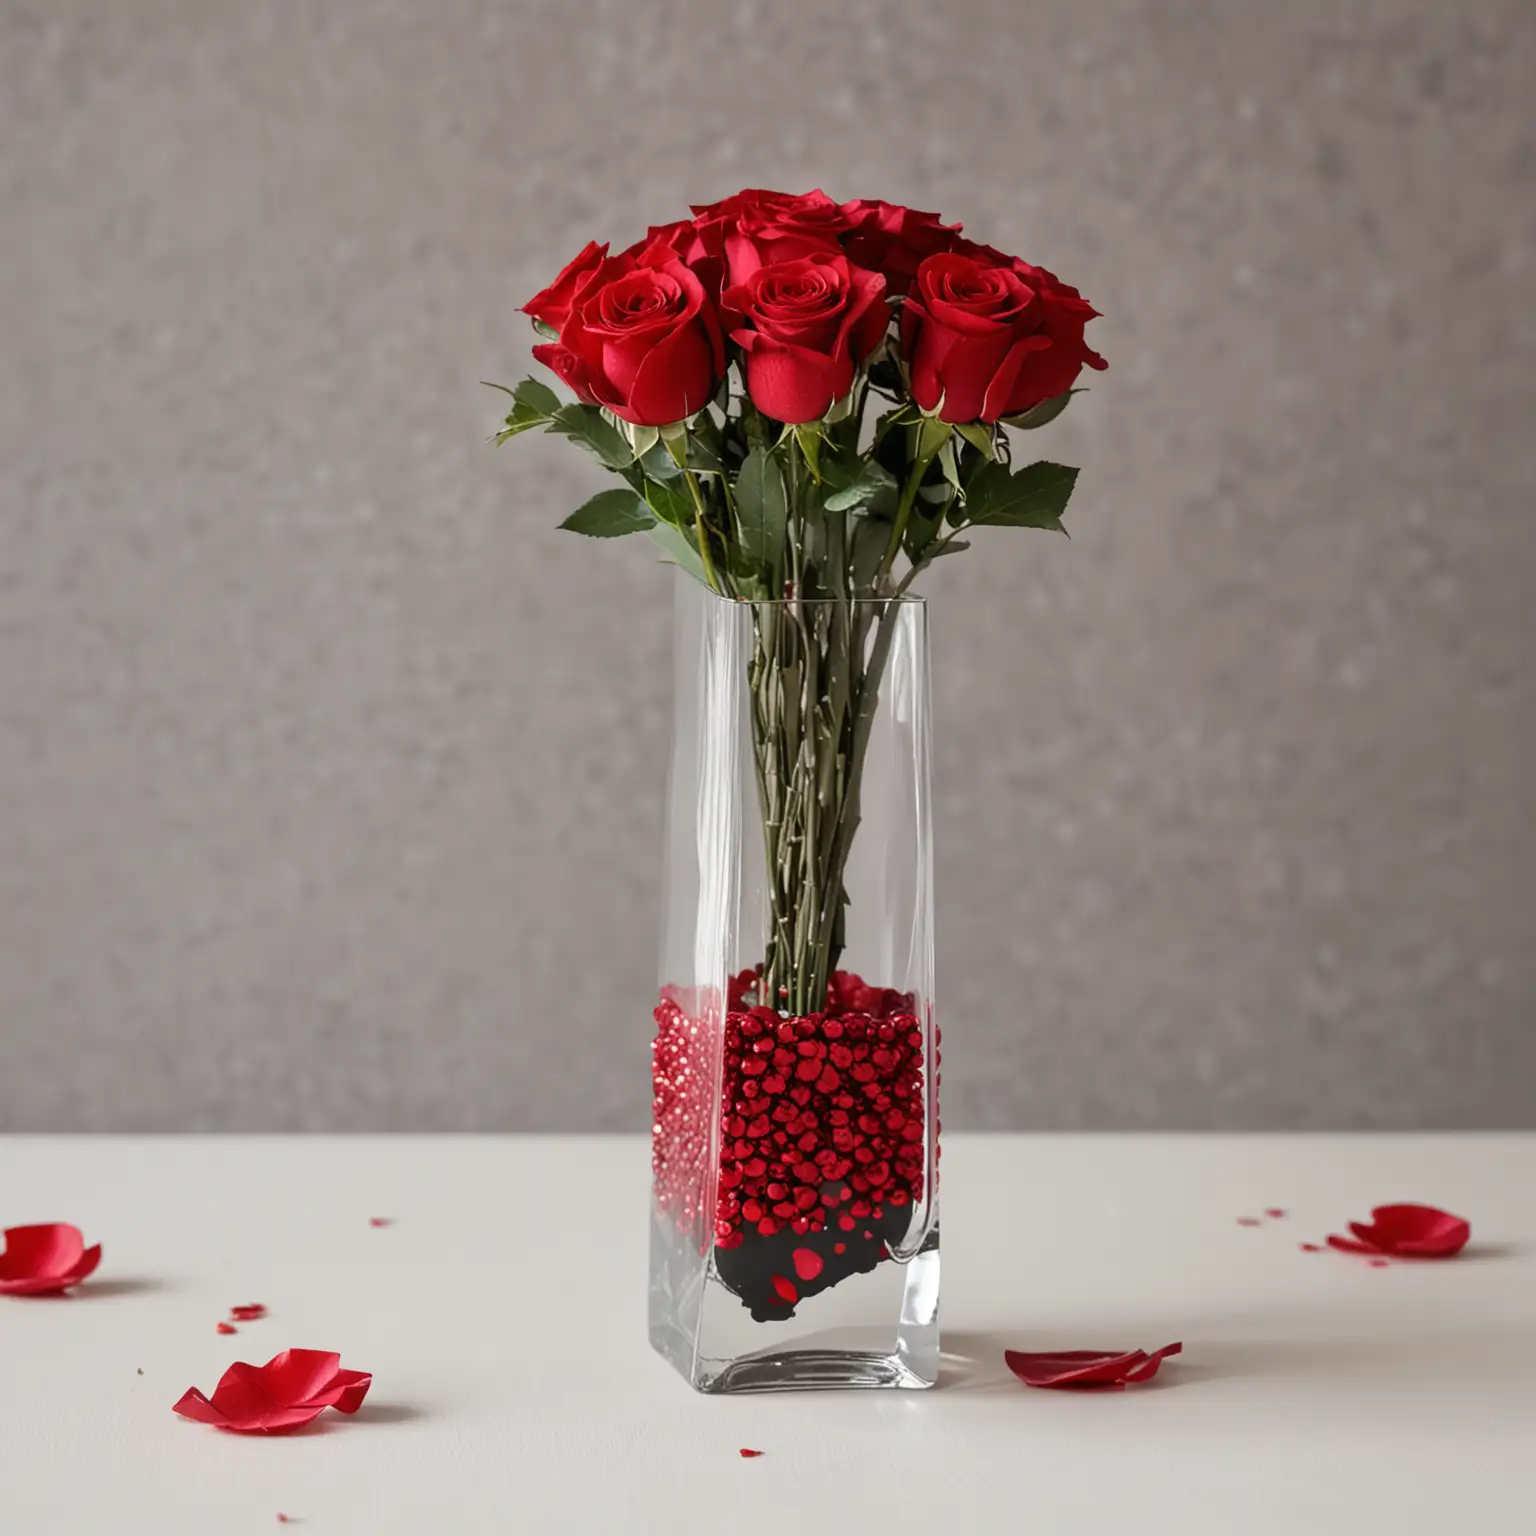 Modern-Wedding-Centerpiece-DIY-Red-Rose-Arrangement-in-Sleek-Sparkling-Vase